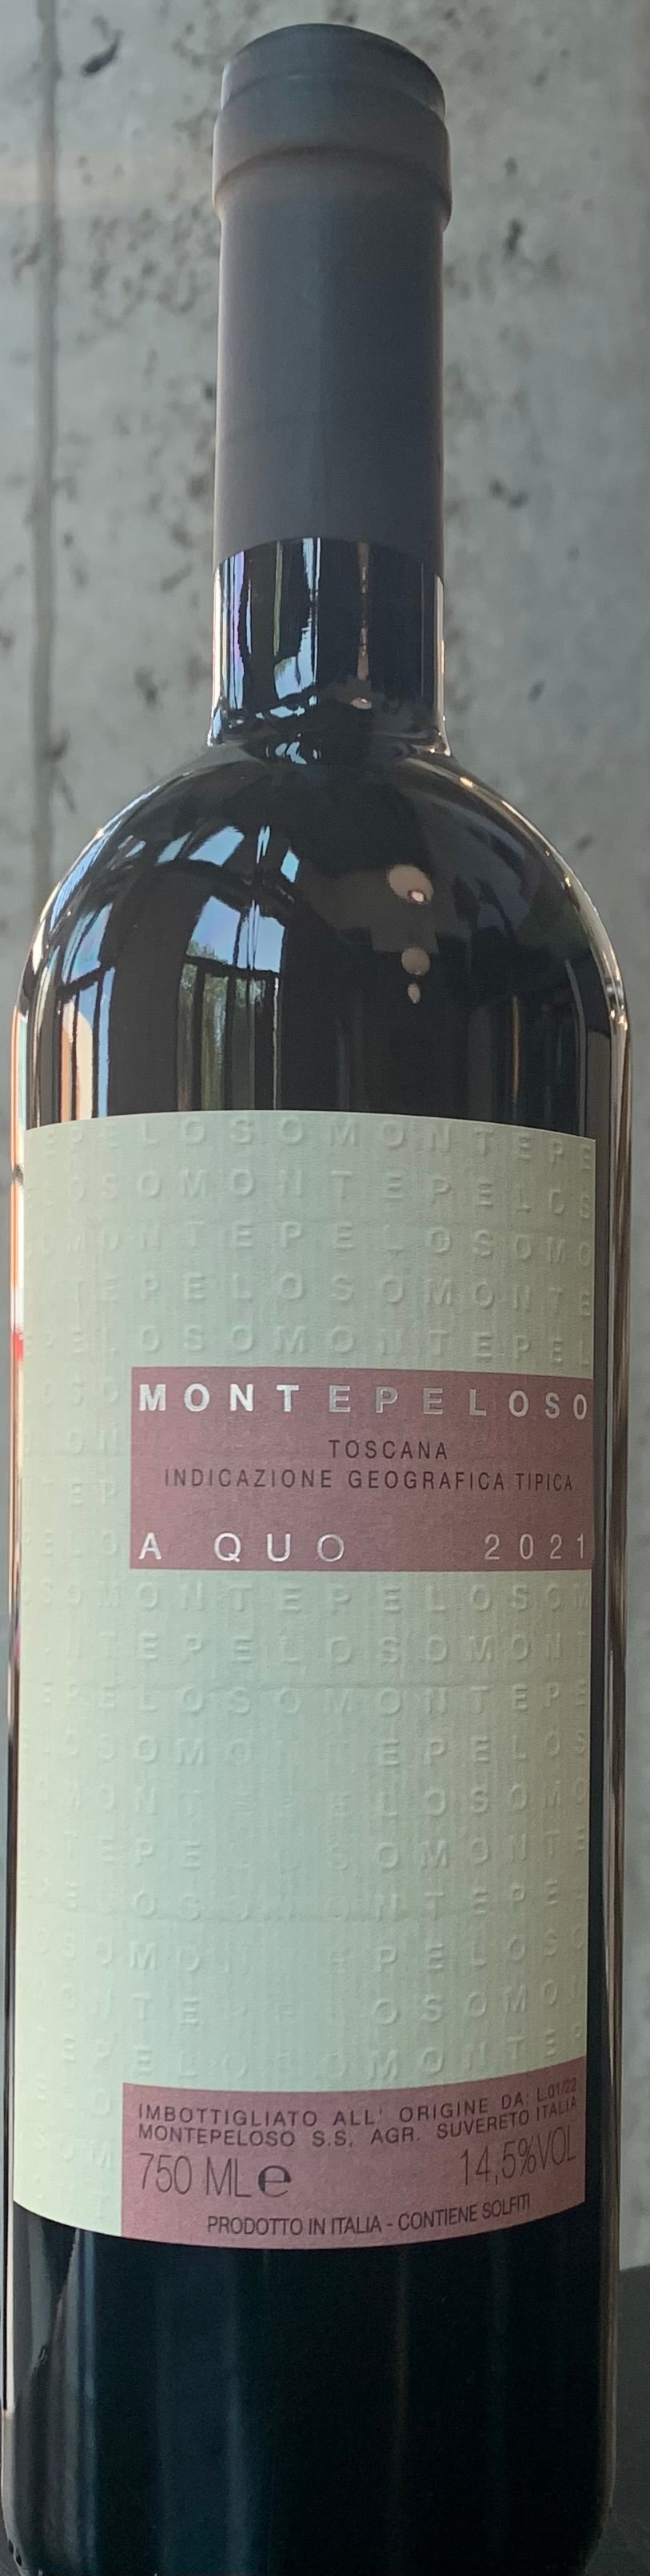 Montepeloso "A Quo" Costa Toscana IGT '21